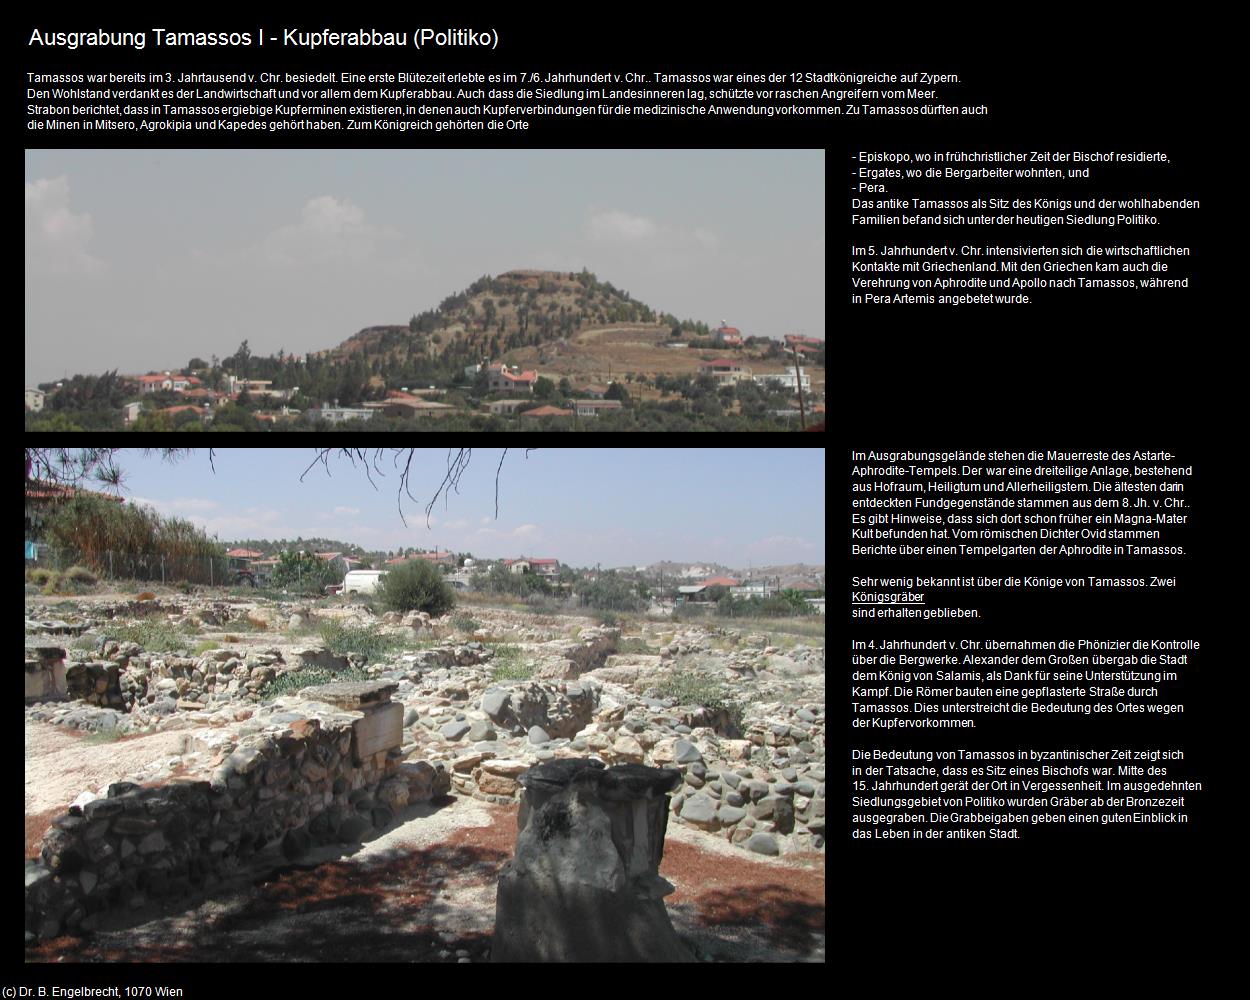 Ausgrabung Tamassos I - Kupferabbau (Politiko) in ZYPERN-Insel der Aphrodite(c)B.Engelbrecht